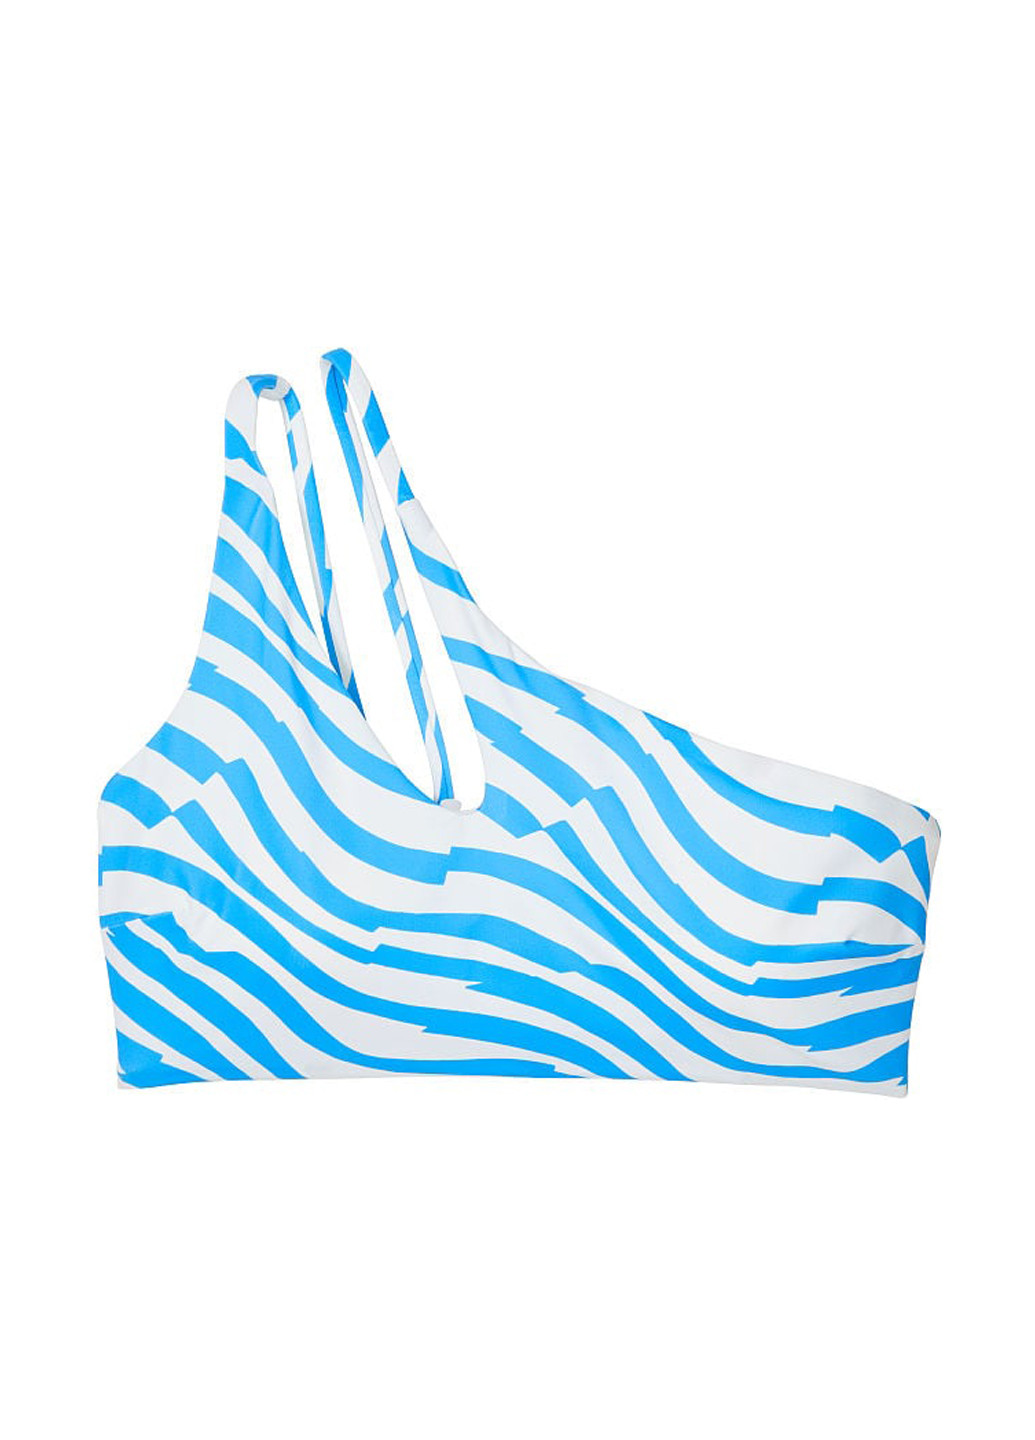 Голубой летний купальник (лиф, трусы) раздельный, топ Victoria's Secret